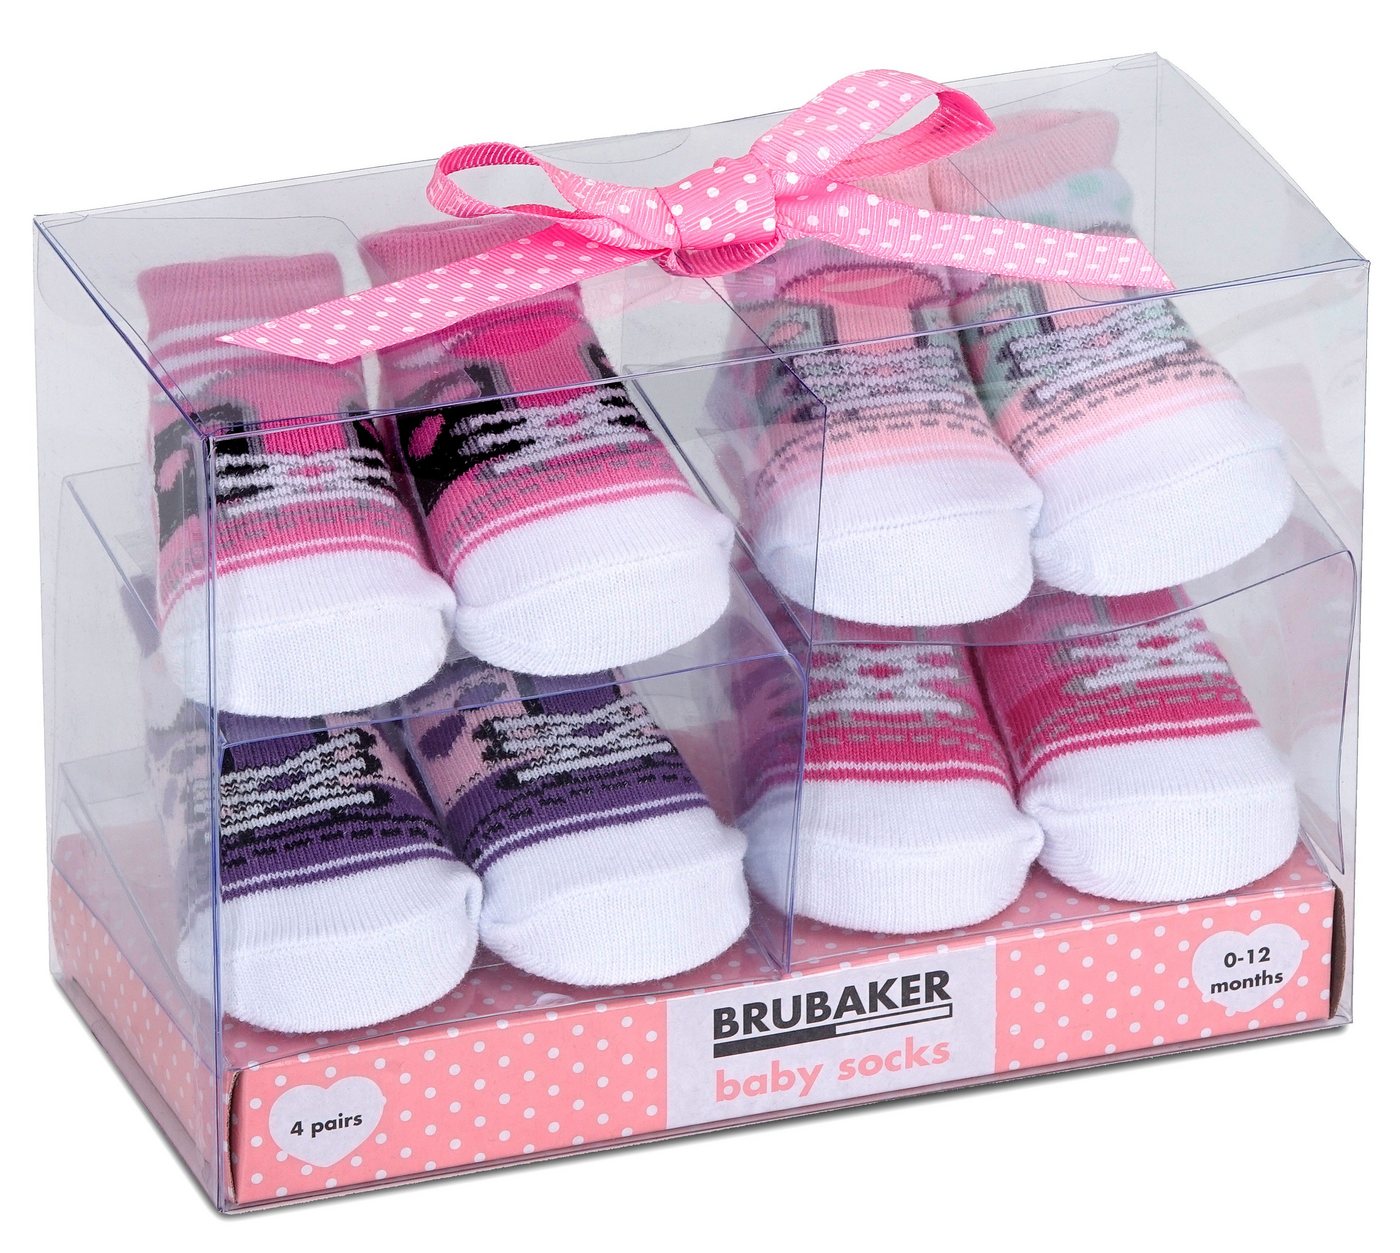 BRUBAKER Socken Babysocken für Mädchen 0-12 Monate (4-Paar, Baumwollsocken im Sneaker Style) Turnschuh Design, Baby Geschenkset für Neugeborene in Geschenkverpackung mit Schleife rosa, Schuh Muster Optik von BRUBAKER